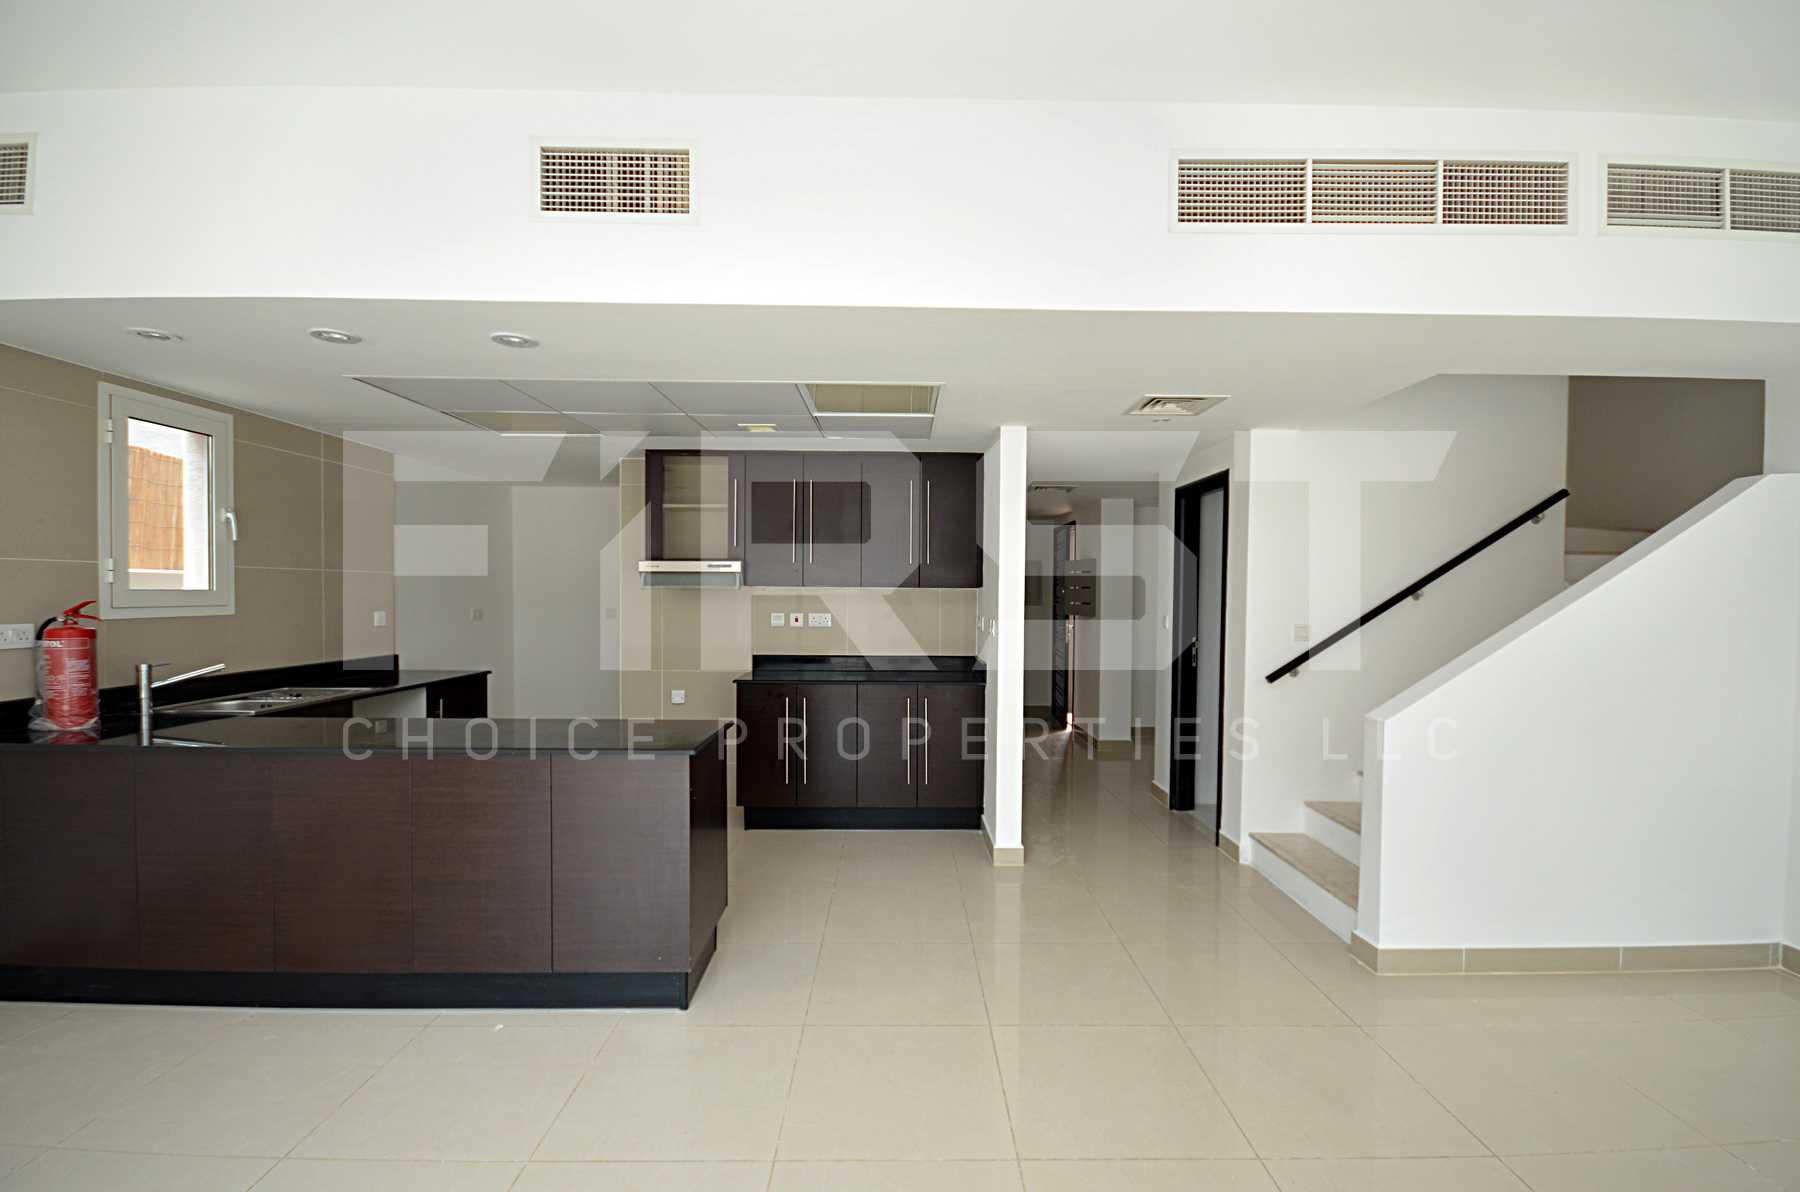 Internal Photo of 4 Bedroom Villa in Al Reef Villas Al Reef Abu Dhabi UAE 265.5 sq.m 2858 sq.ft (2).jpg